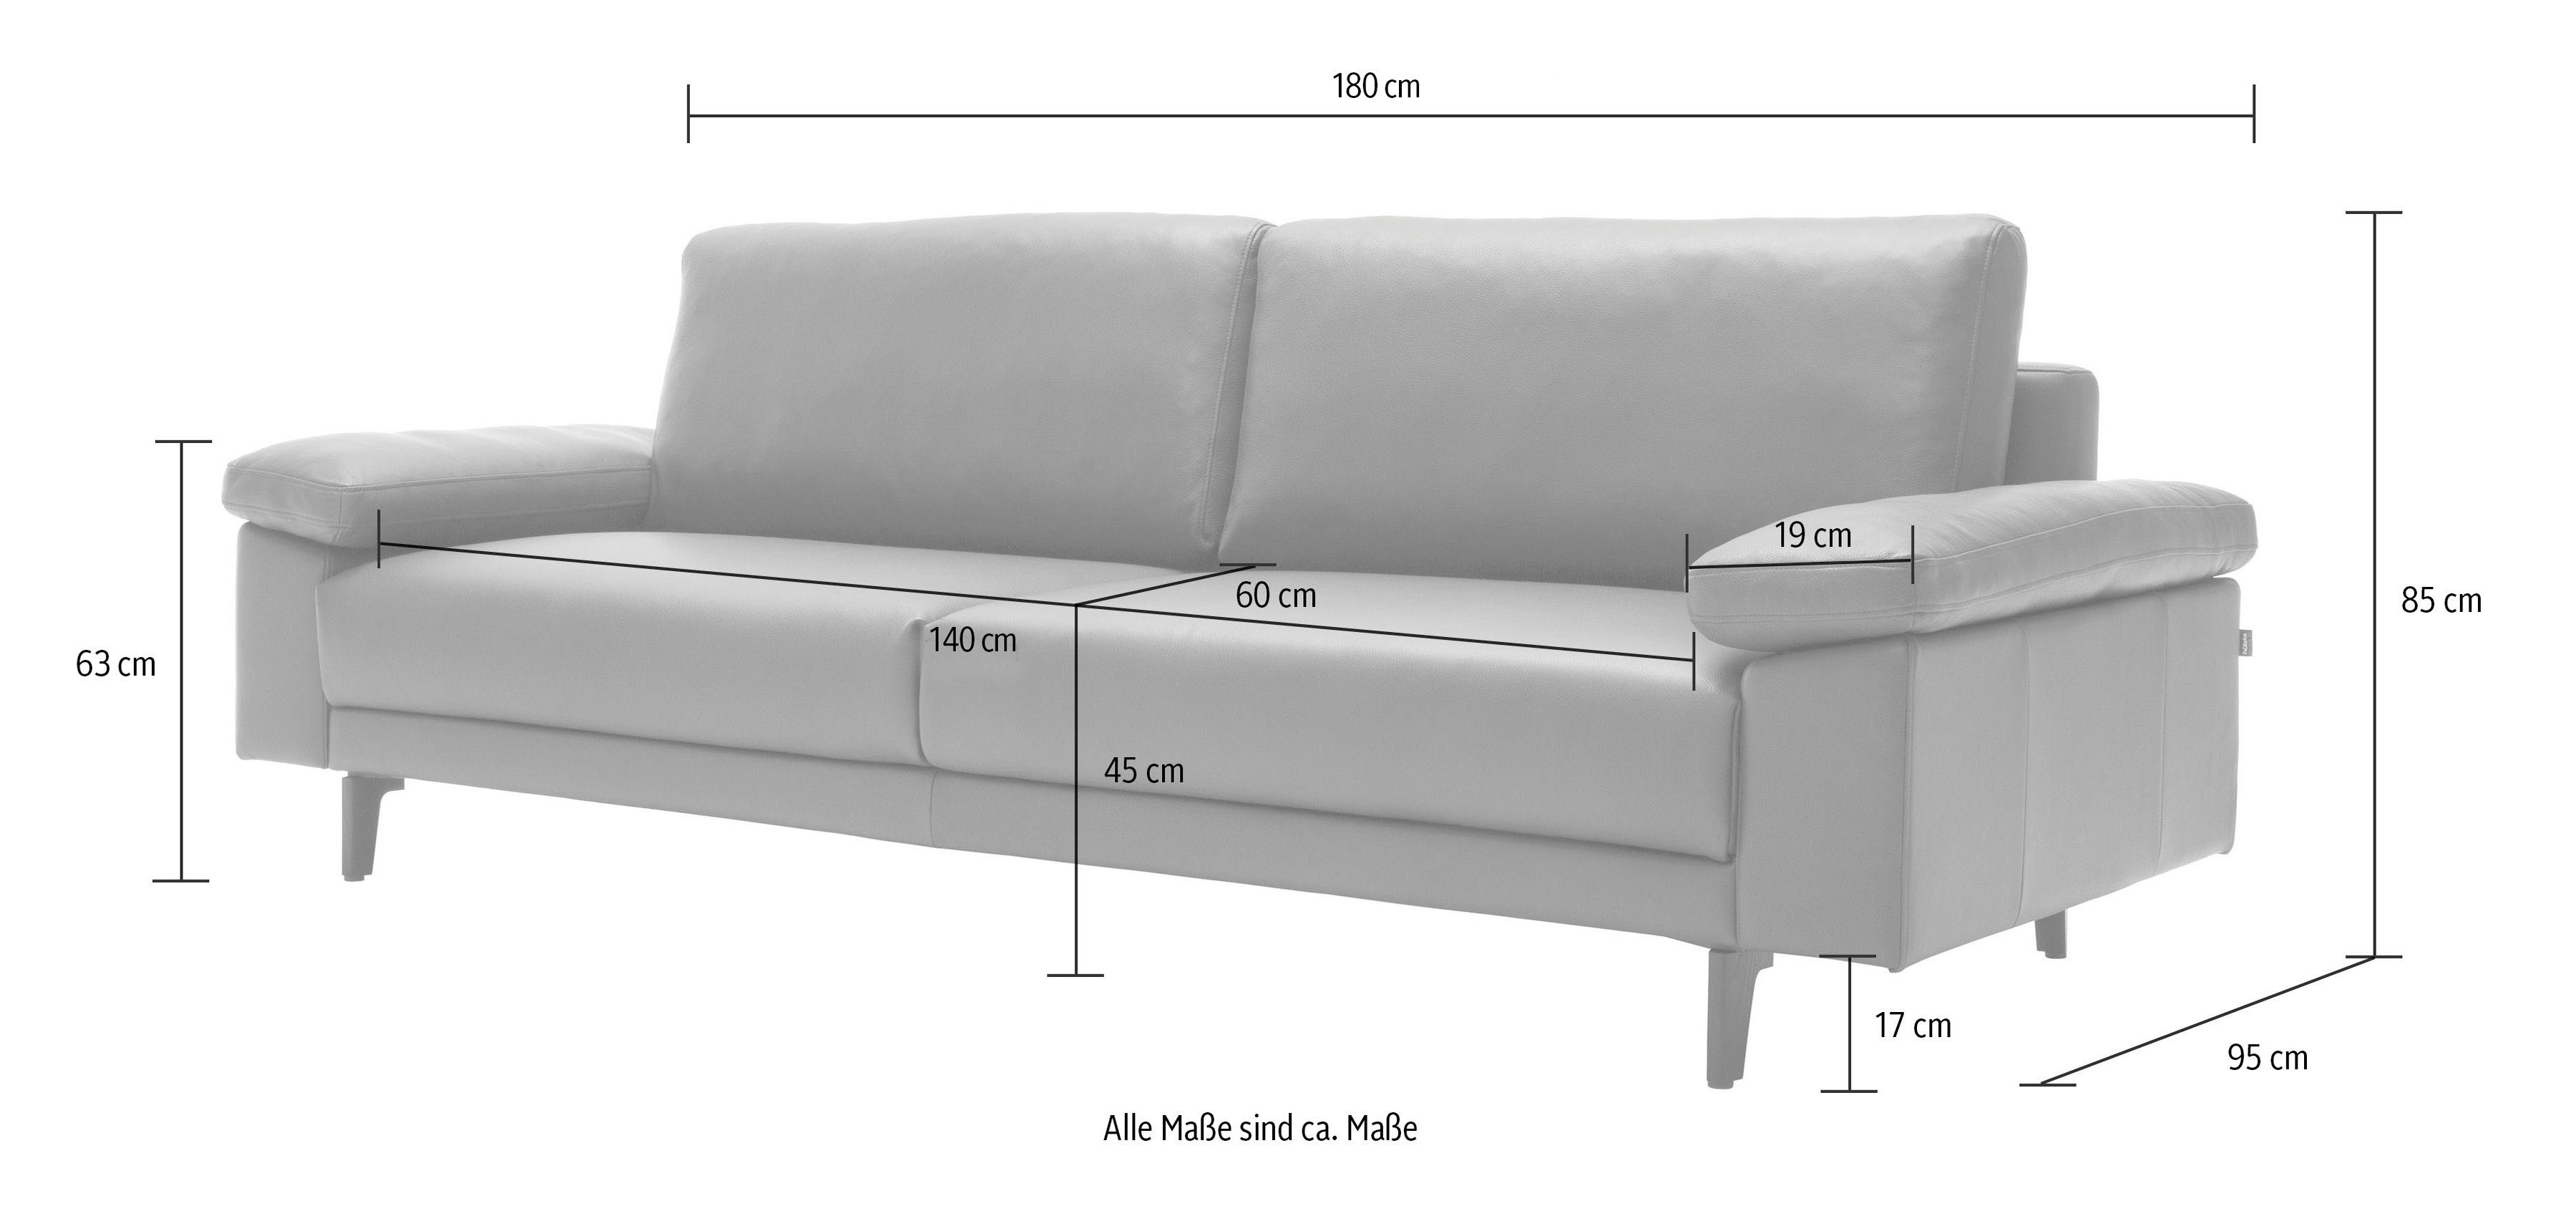 sofa hs.450 2-Sitzer hülsta